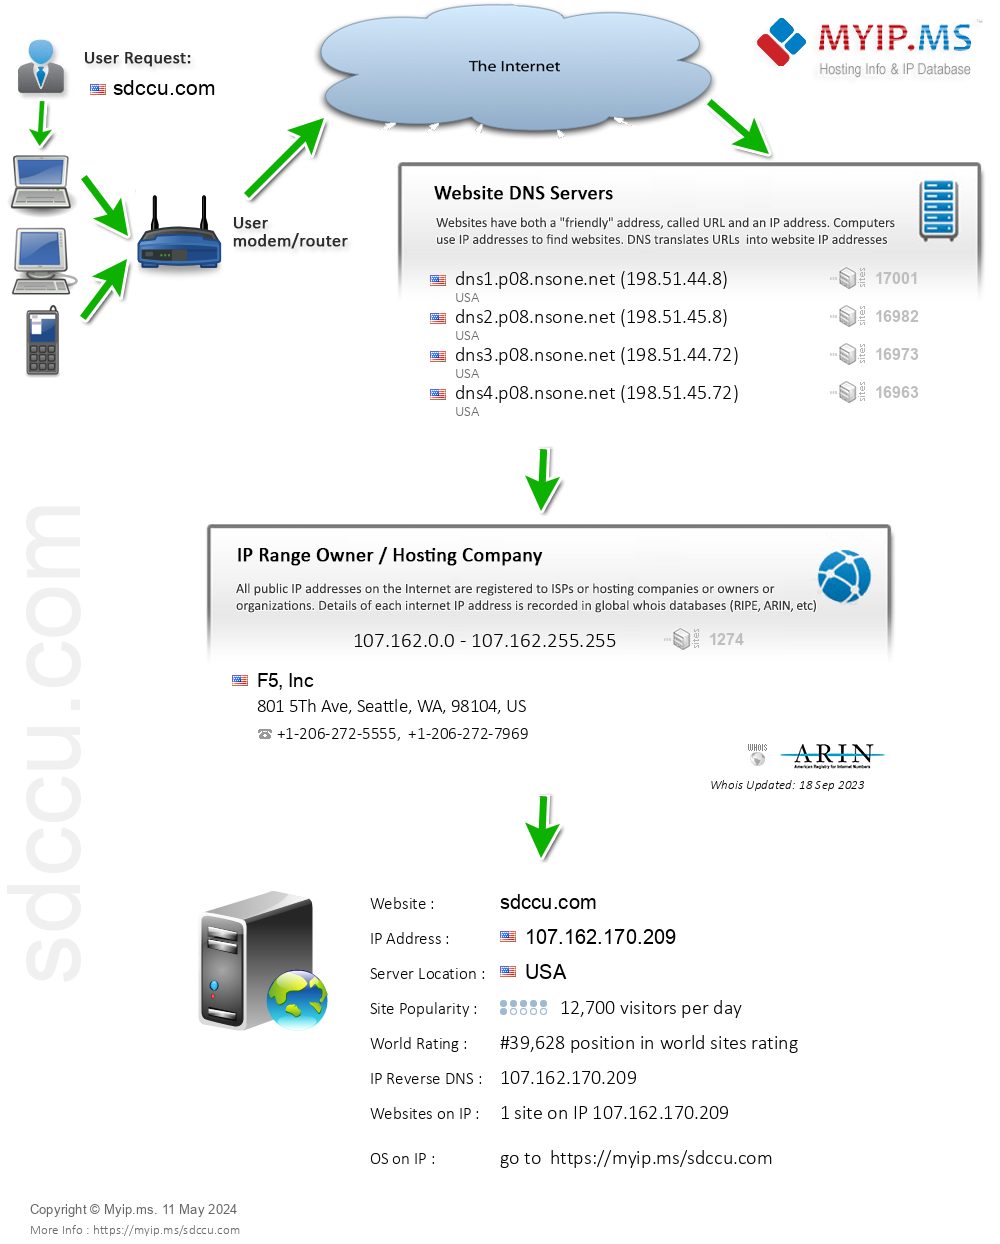 Sdccu.com - Website Hosting Visual IP Diagram